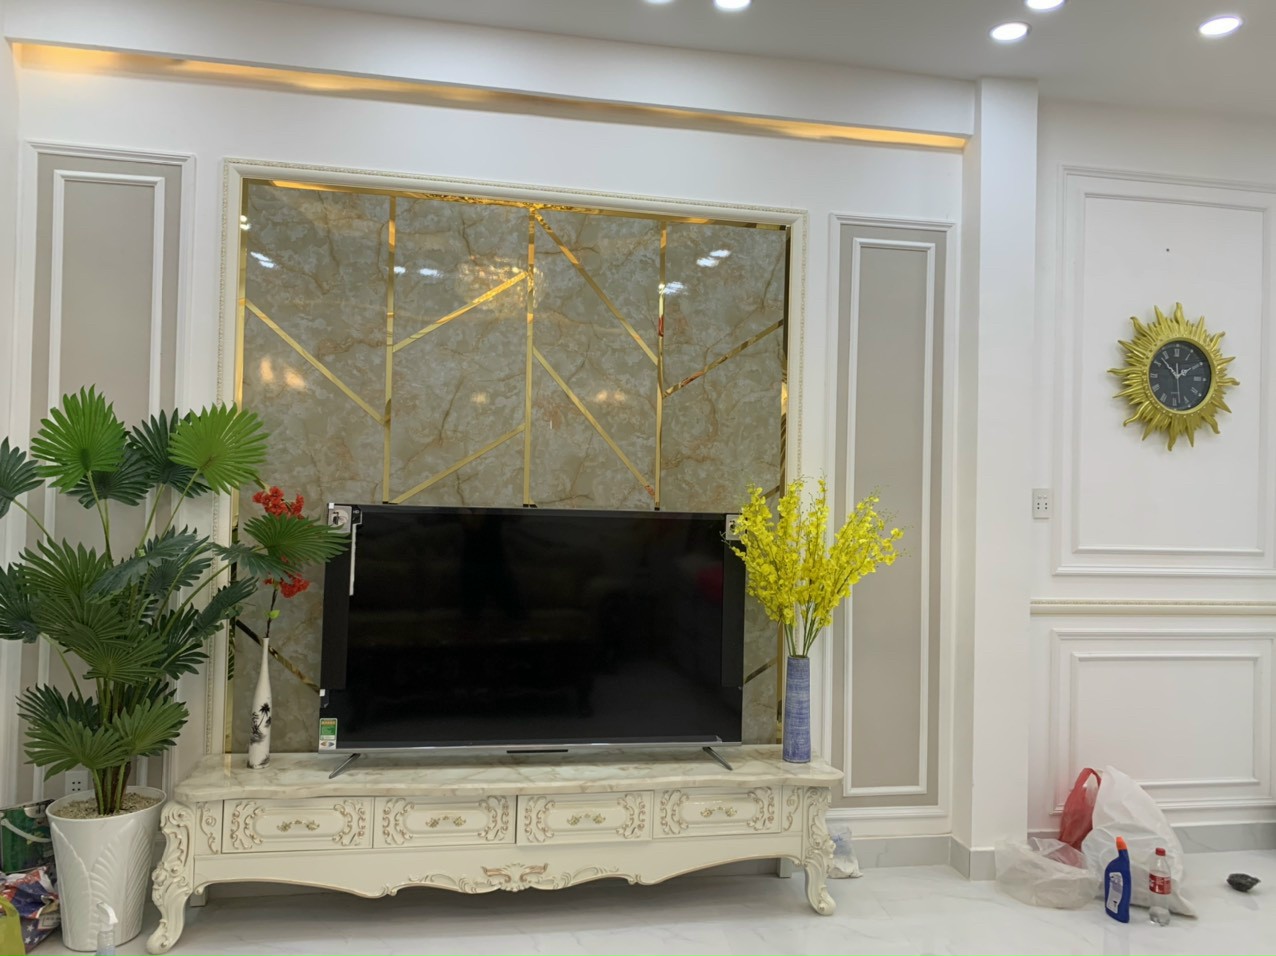 Bán nhà thiết kế đẹp Full nội thất cao cấp, Huỳnh Tấn Phát, Q7. 3 lầu. Giá 4,45 tỷ